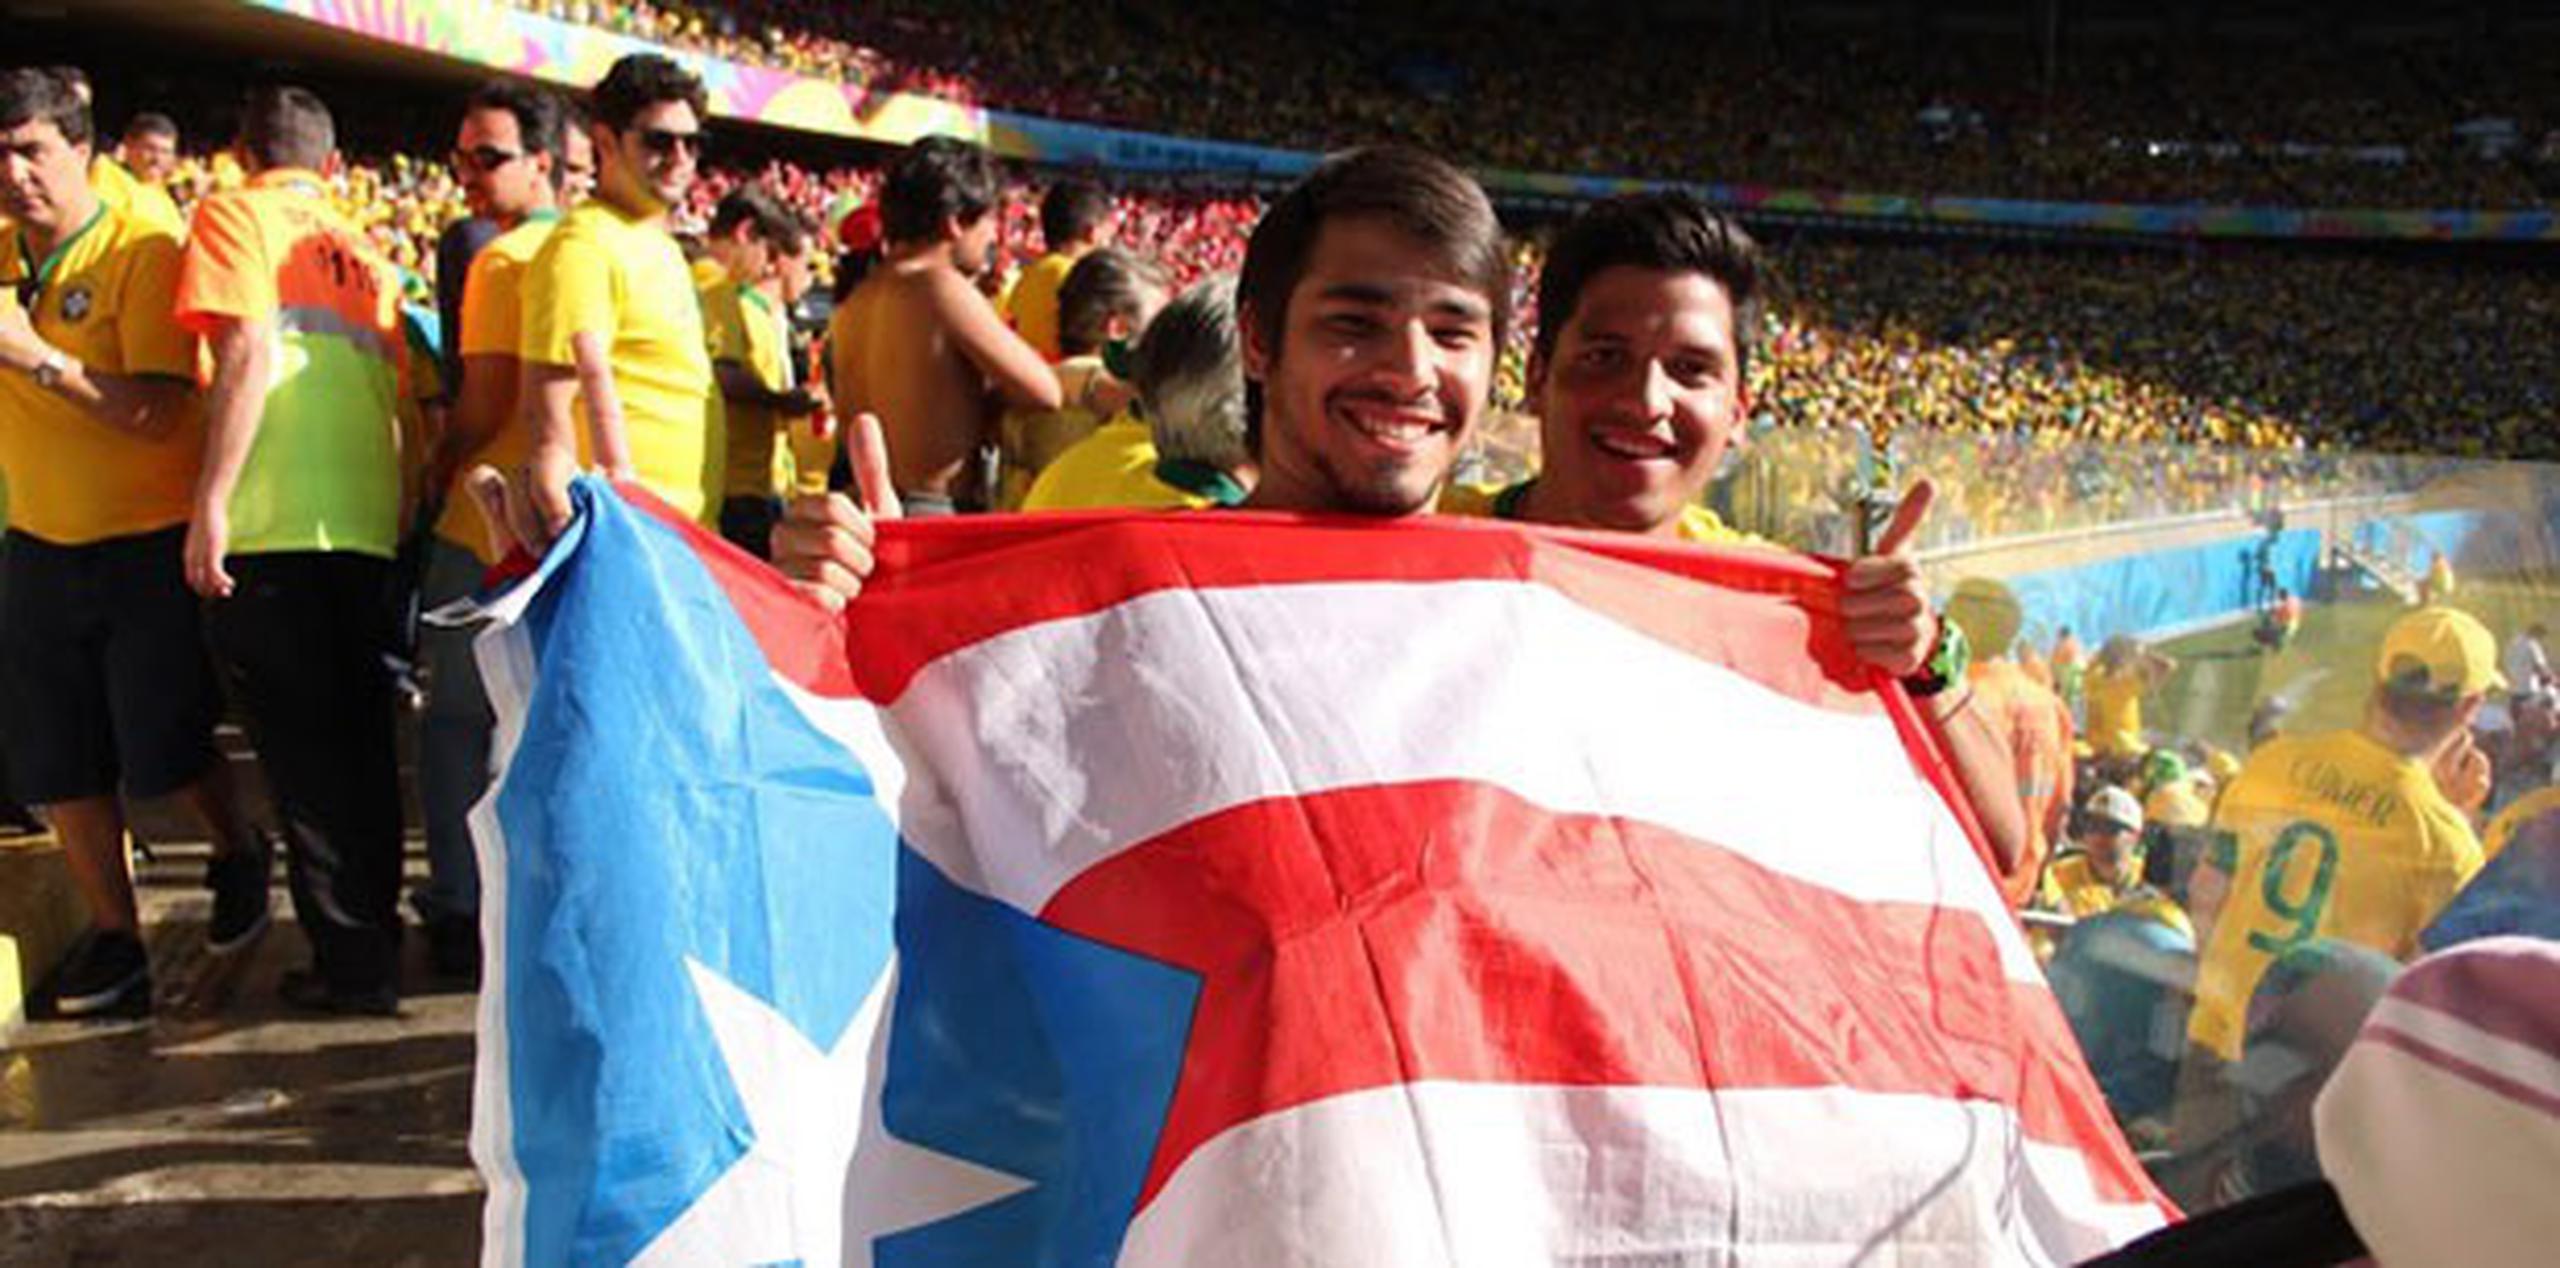 Ambos consiguieron entradas gracias a que Javier lleva en Belo Horizonte desde enero.(alex.figueroa@gfrmedia.com)